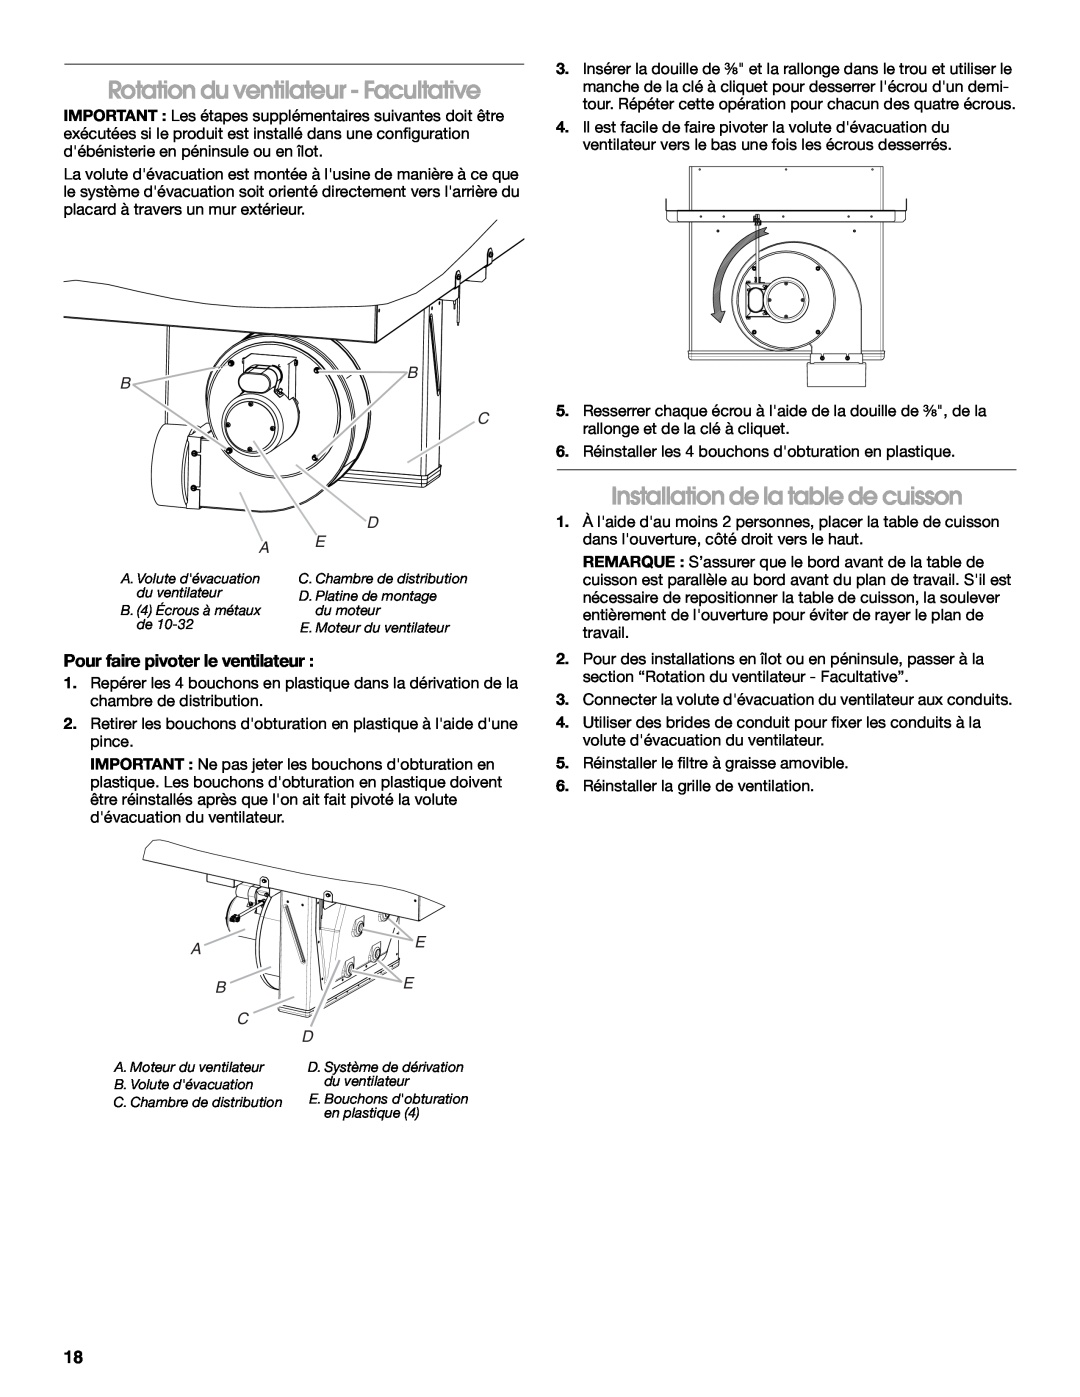 Jenn-Air W10436037B installation instructions Rotation du ventilateur - Facultative, Installation de la table de cuisson 